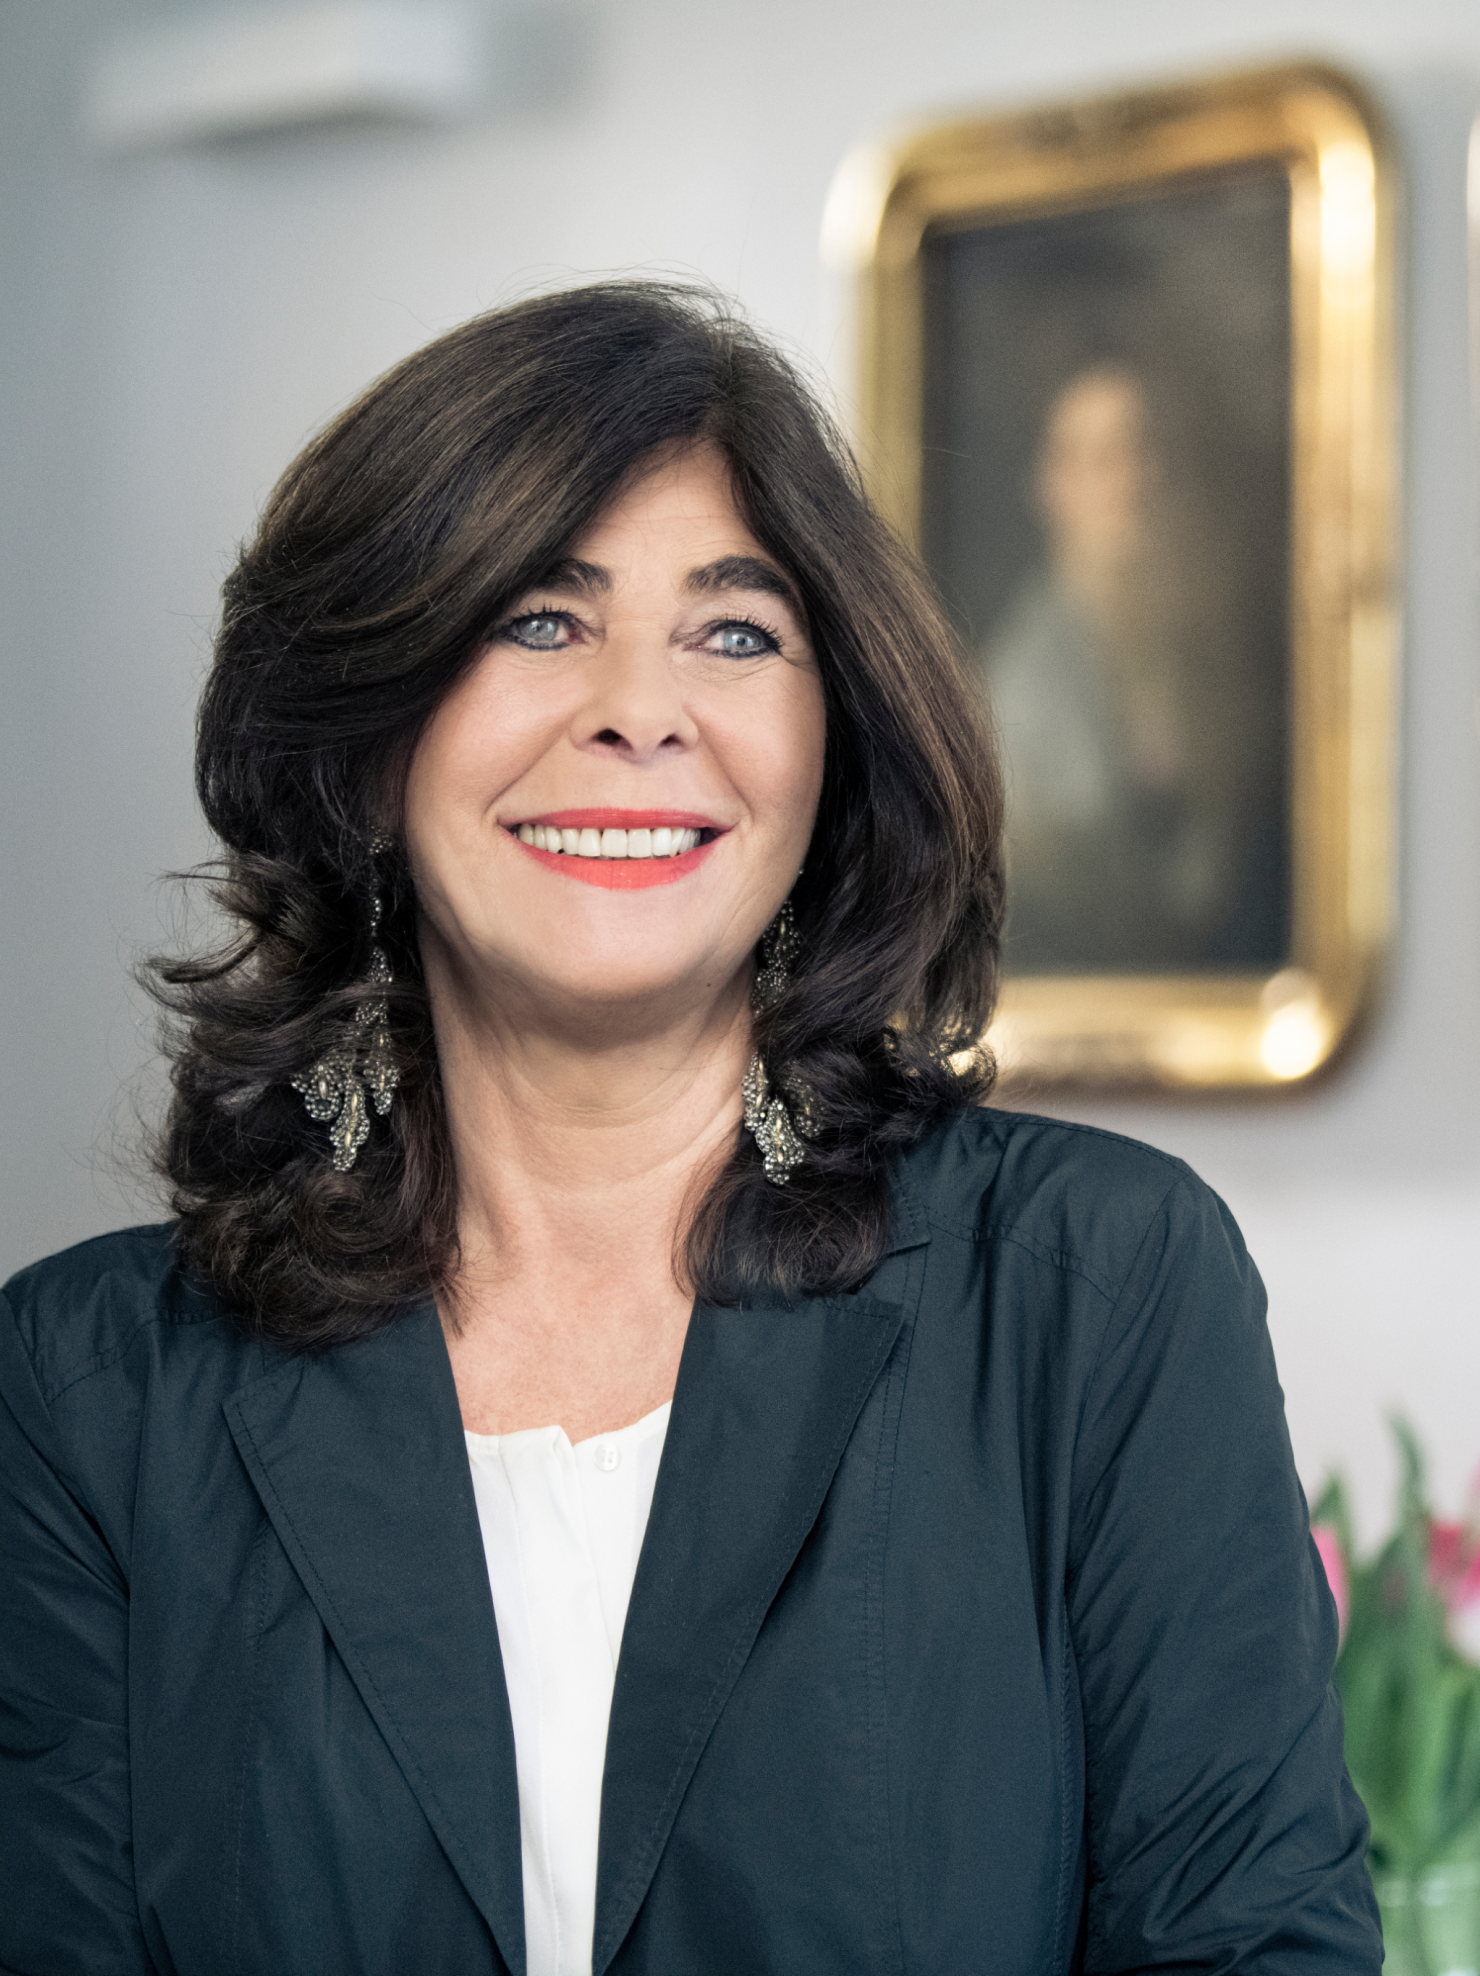 Portraitfoto von Dr. Maria Christina Kolar-Syrmas, Rechtsanwältin der Kanzlei FSKN Rechtsanwälte